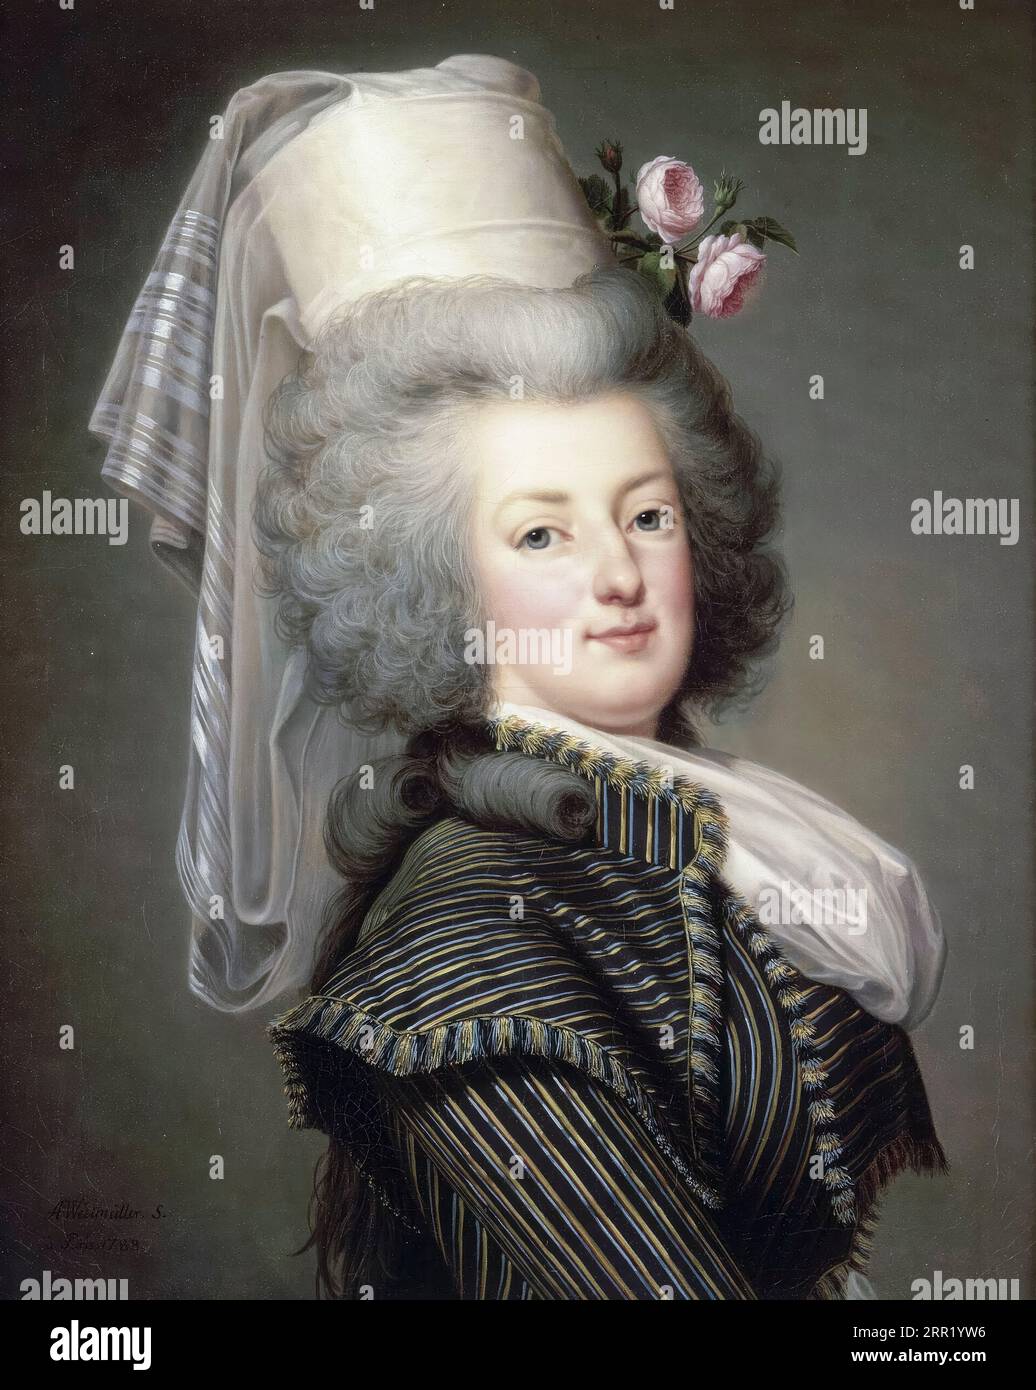 Marie-Antoinette, reine de France (1755-1793), portrait à l'huile sur toile d'Adolf Ulrik Wertmüller, 1788 Banque D'Images